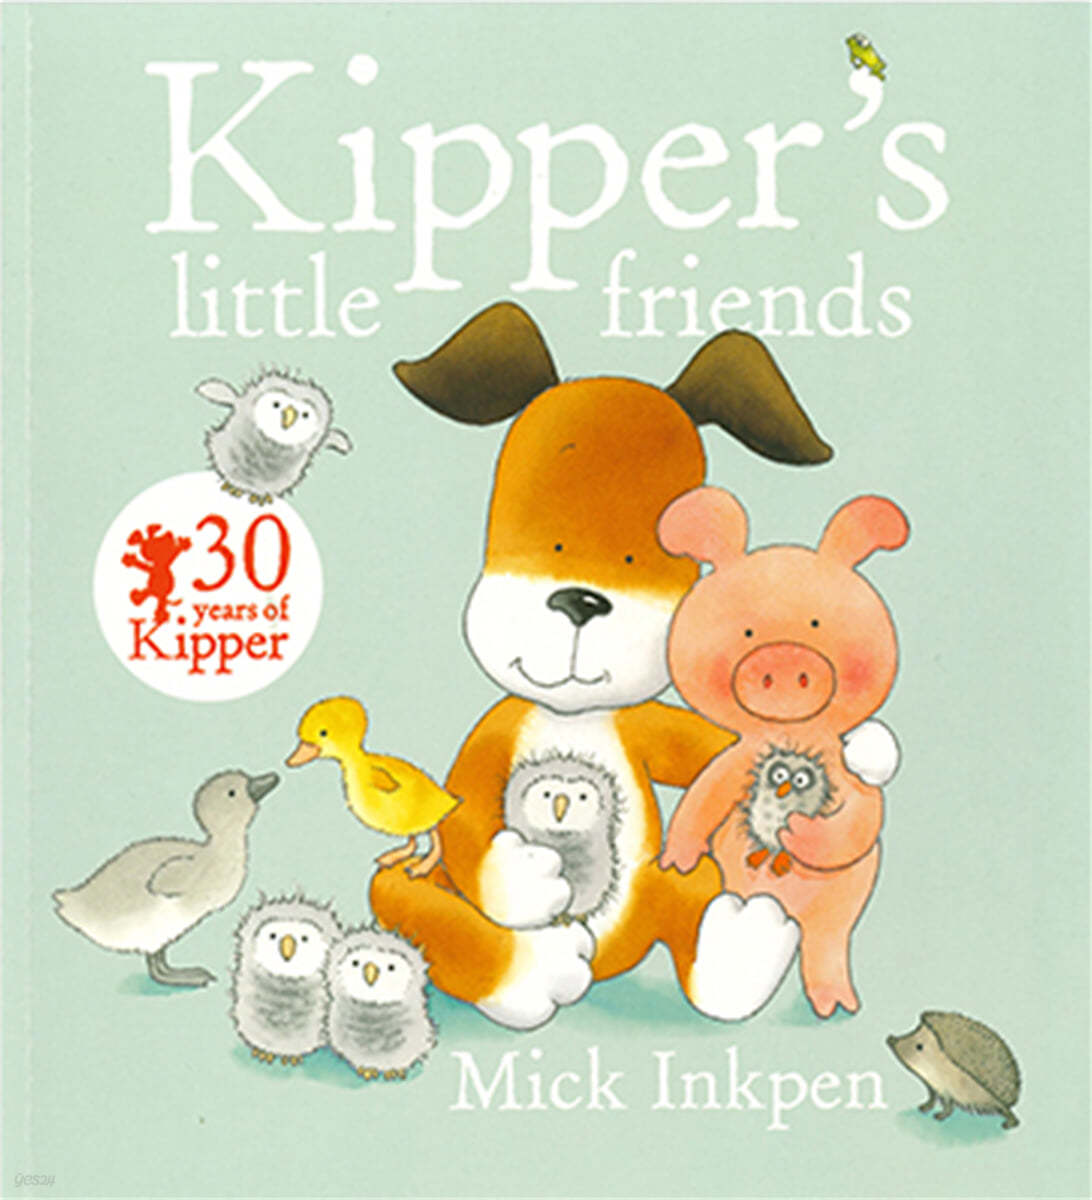 Kipper's little <span>f</span>riends